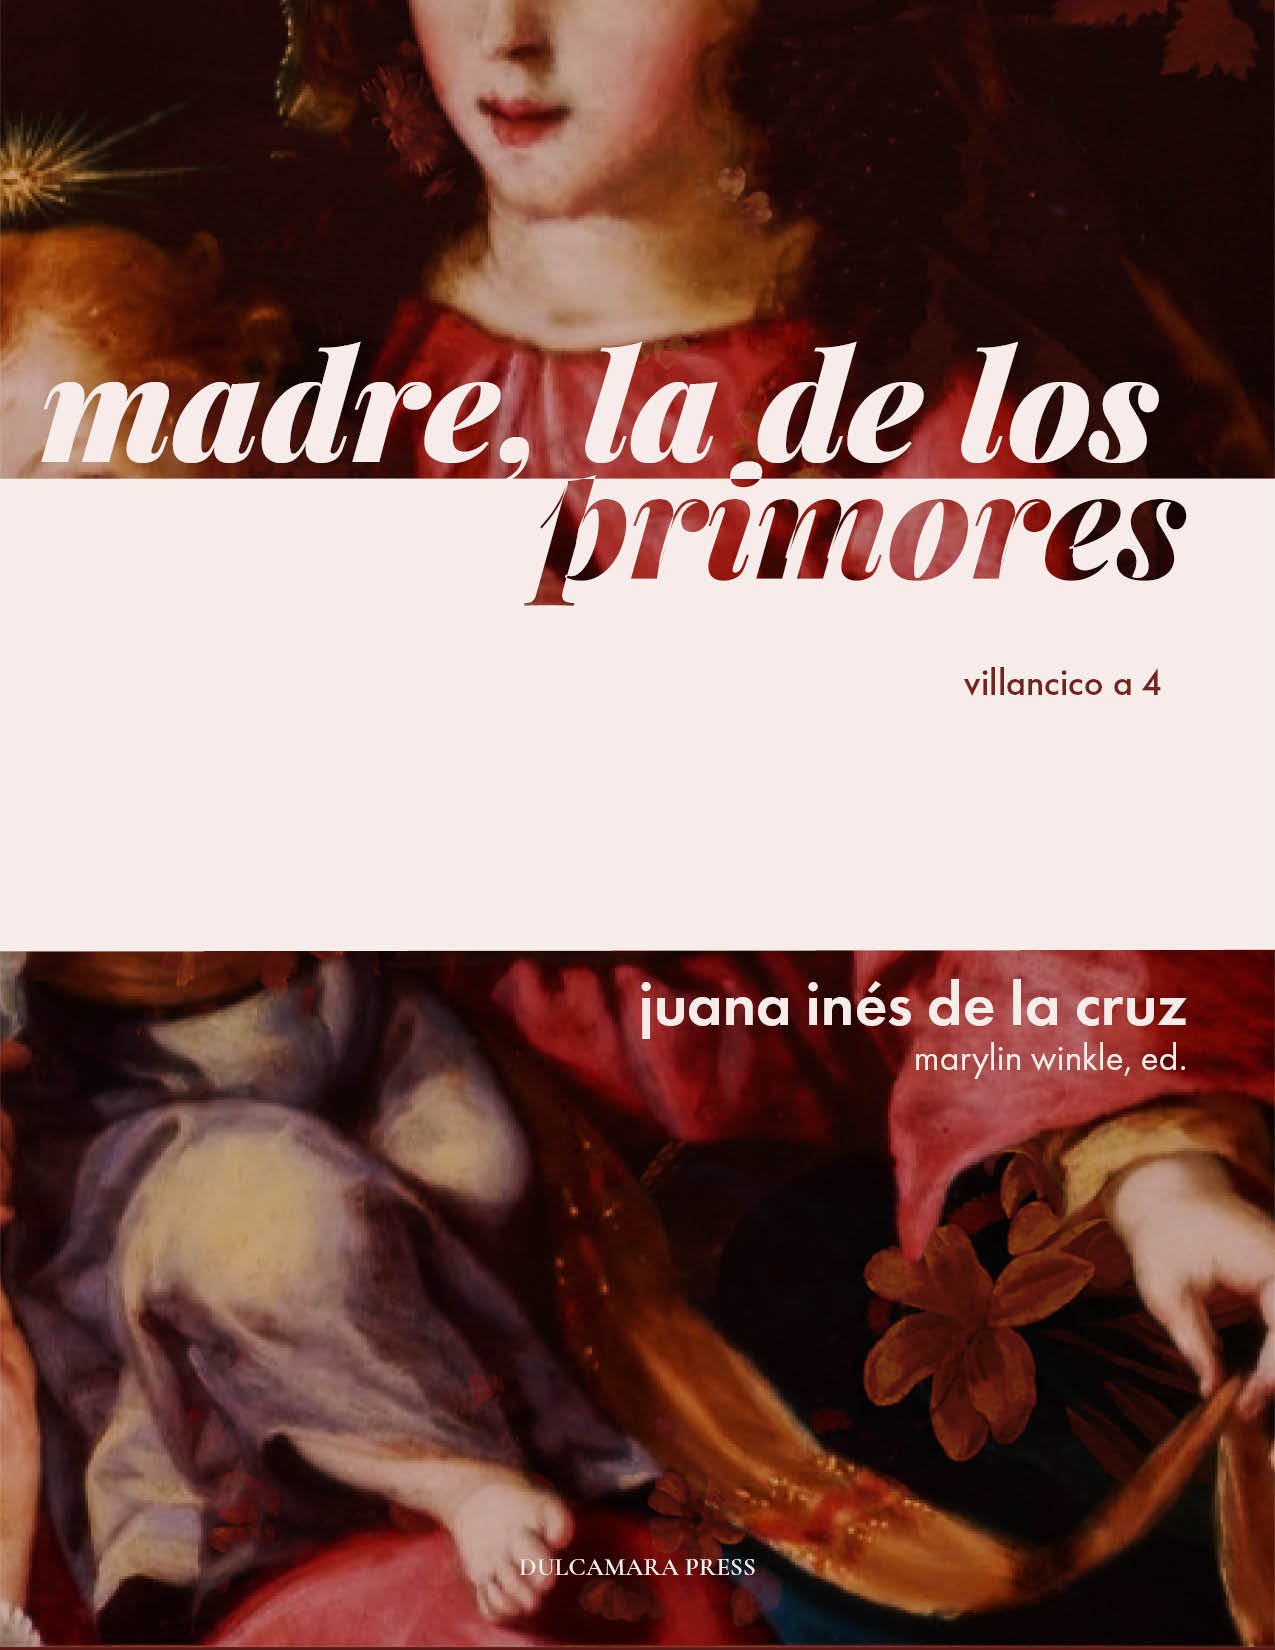 cover image for Madre, la de los primores by Juana Ines de la Cruz